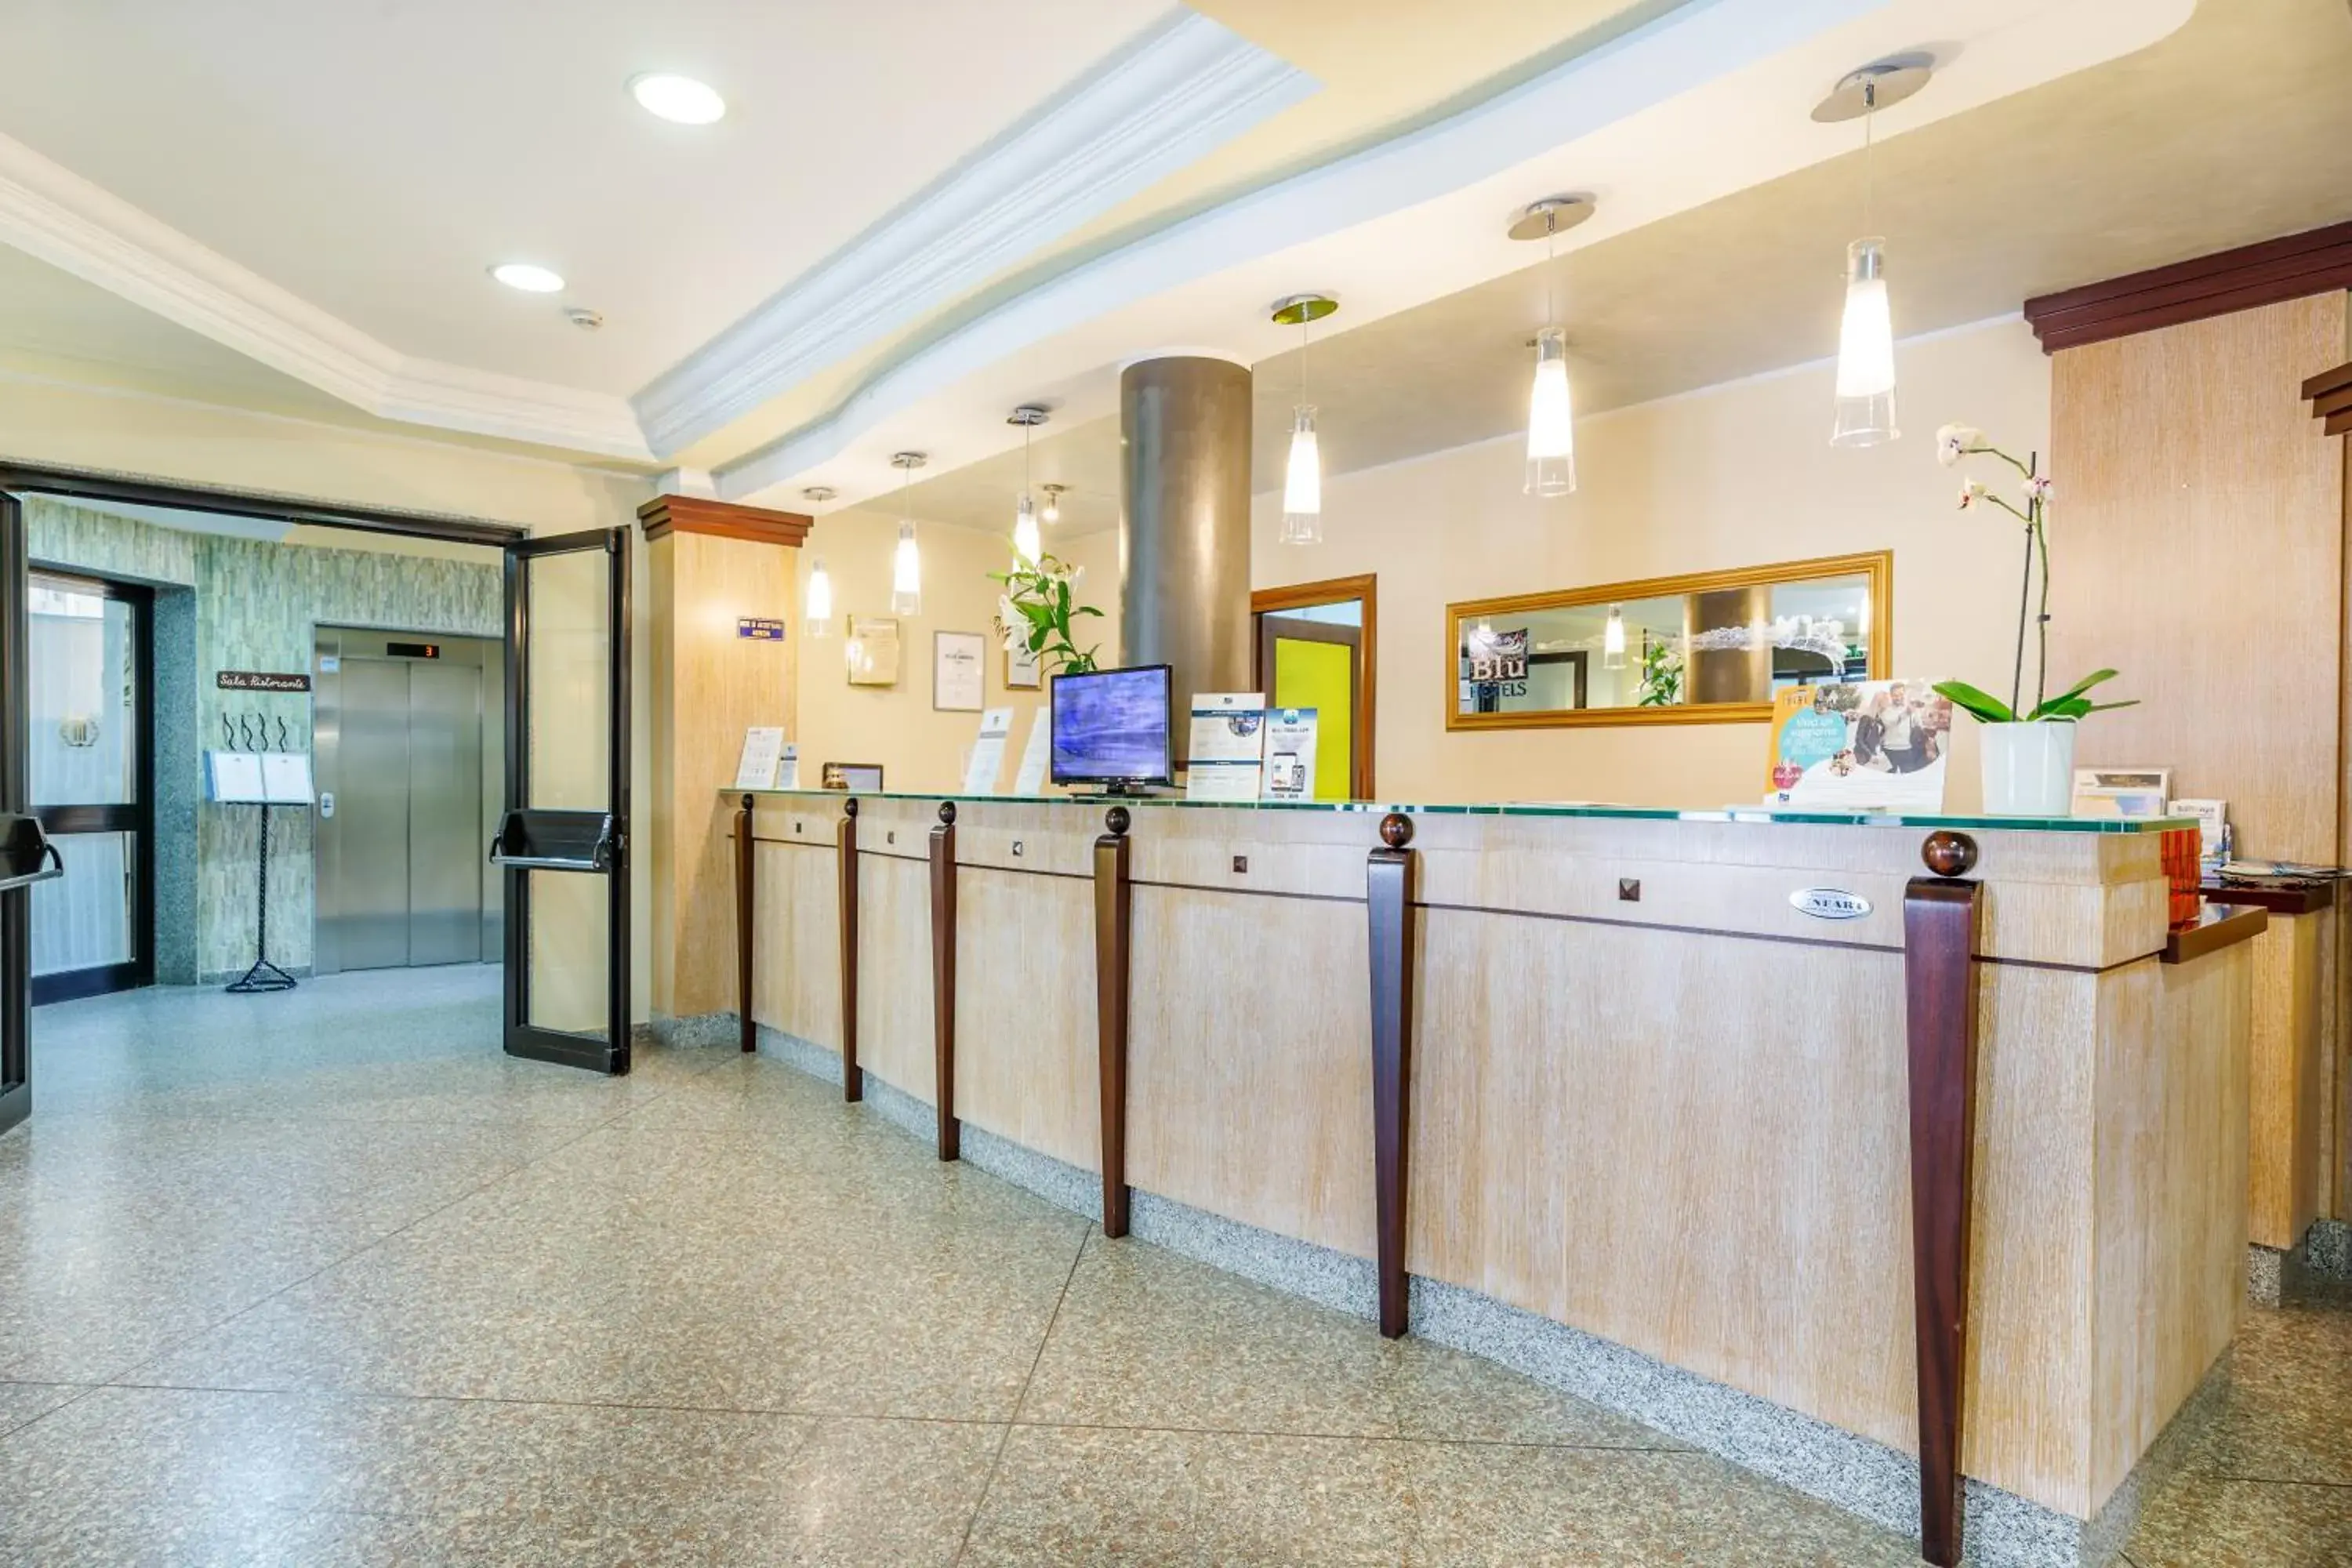 Lobby or reception, Lobby/Reception in Rina Hotel